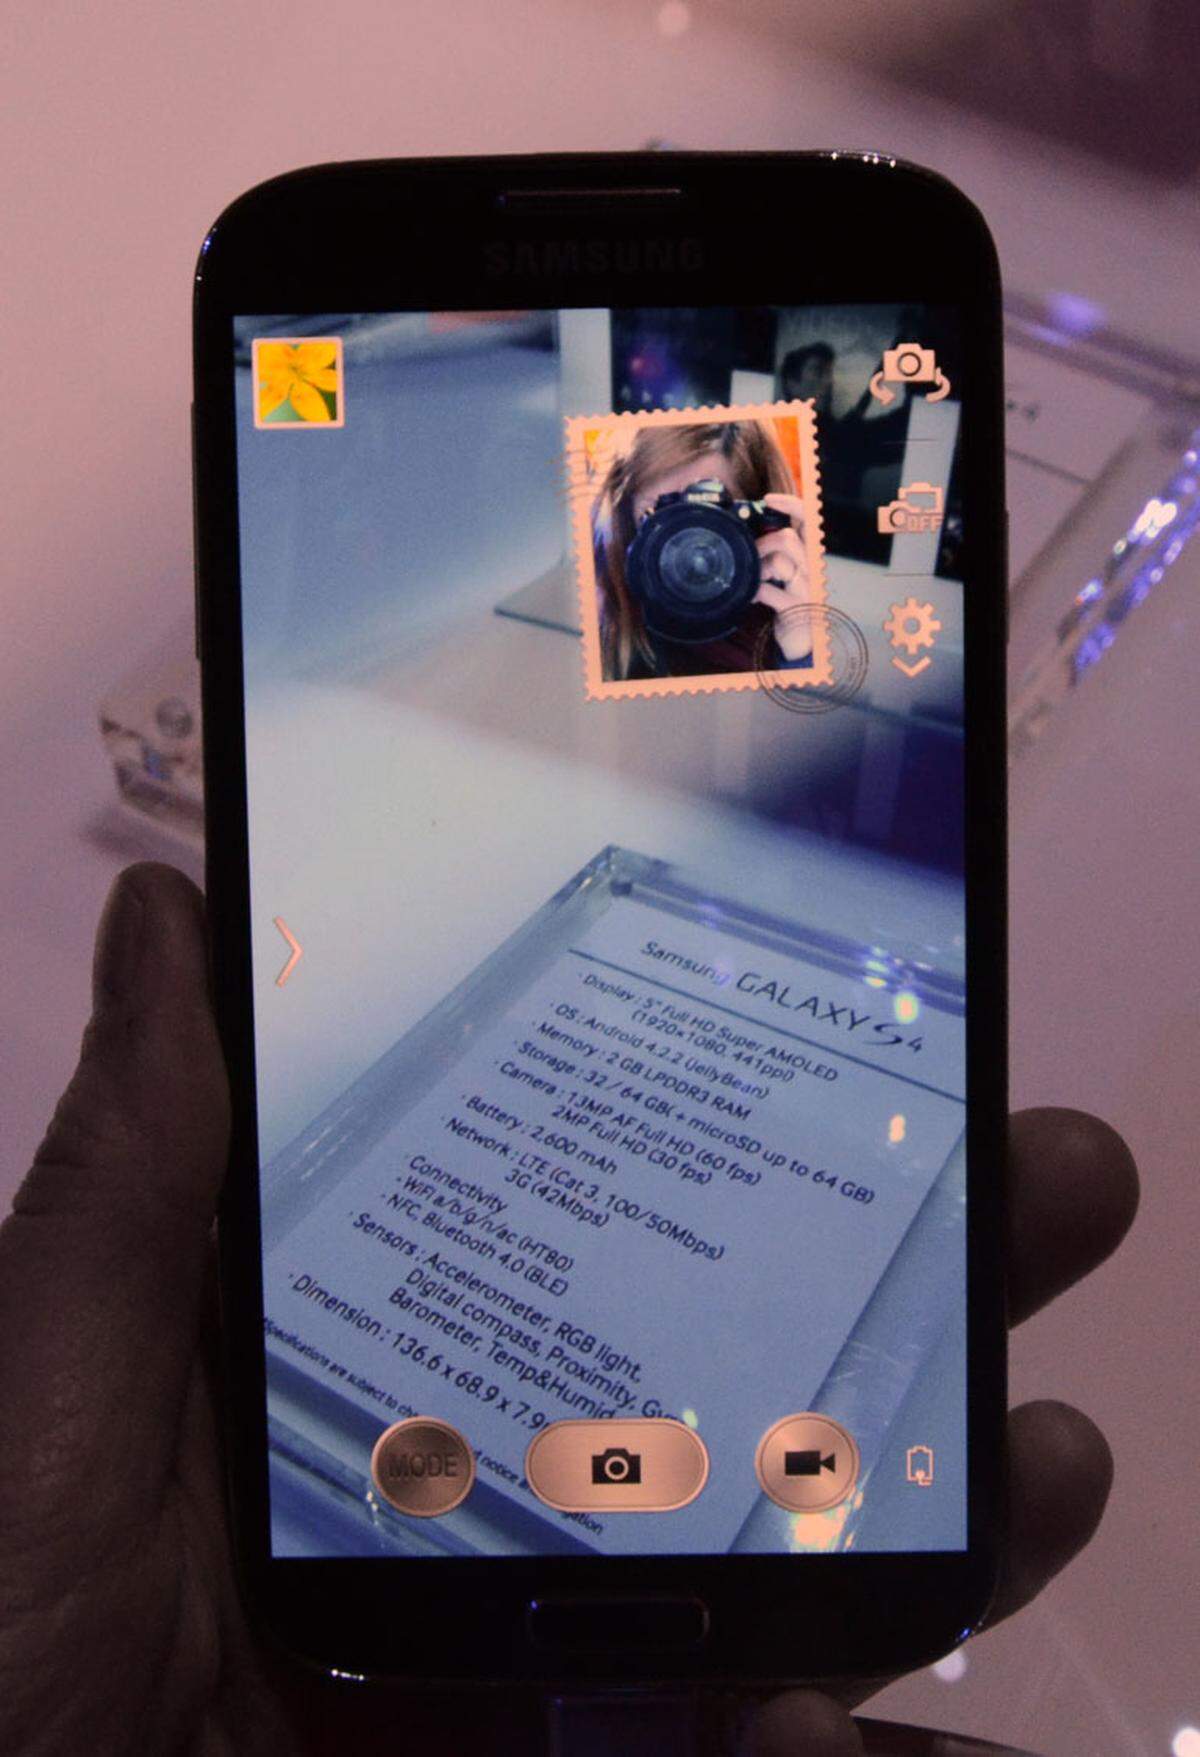 Die Kamera das S4 fotografiert mit 13 Megapixel und kann auch gleichzeitig mit der Frontkamera (2 Megapixel) verwendet werden. Das soll zum Beispiel dafür sorgen, dass der fotografierende Papi auch mal abgelichtet wird. Die Funktion ist ebenfalls in Samsungs Video-Chat-App integriert. Damit können Personen hinter dem Smartphone am Videotelefonat teilnehmen. Zudem hat Samsung für die Kamera eine Funktion von Nokia übernommen: Unerwünschte Gegenstände oder Personen können von Fotos nachträglich entfernt werden.